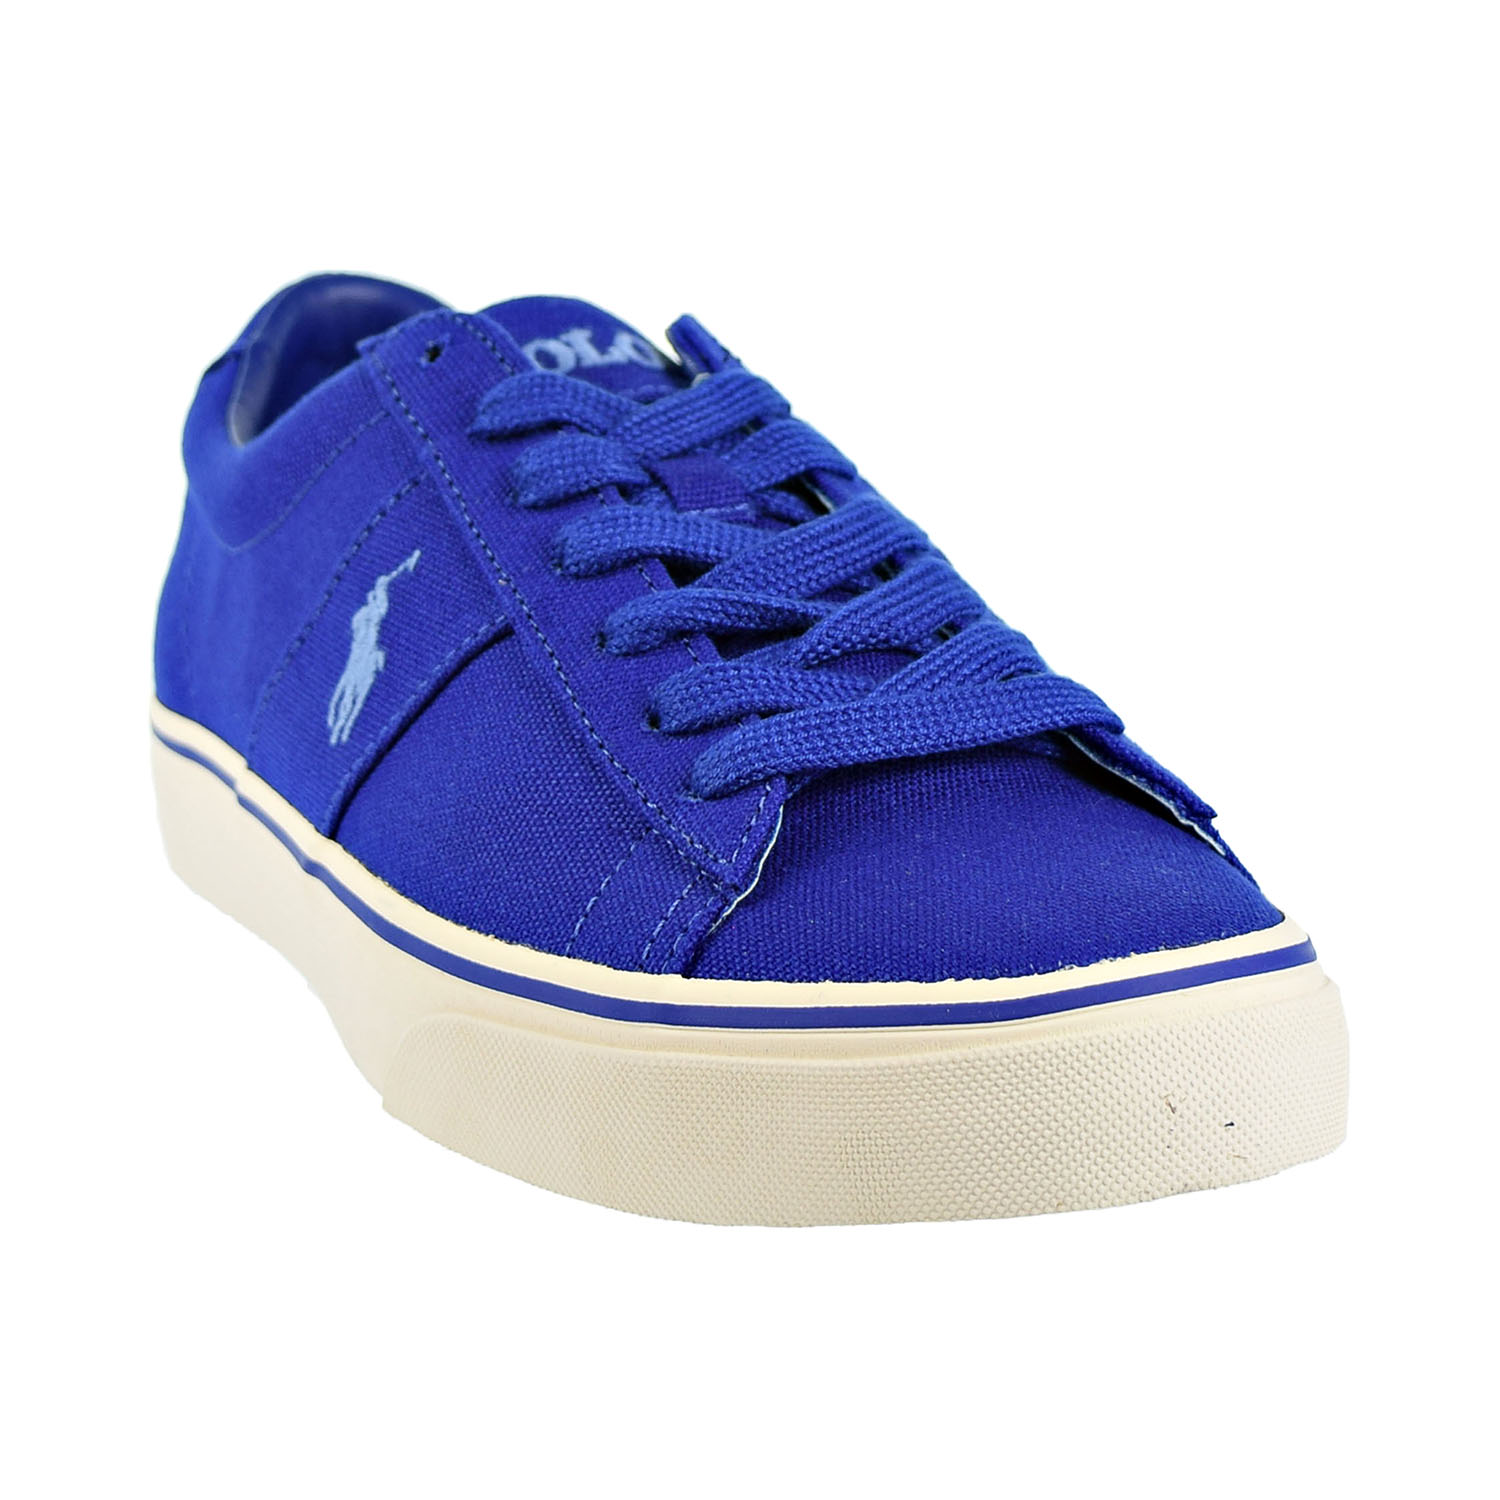 Polo Ralph Lauren Sayer Men's Shoes Blue 816710017-003 - image 2 of 6